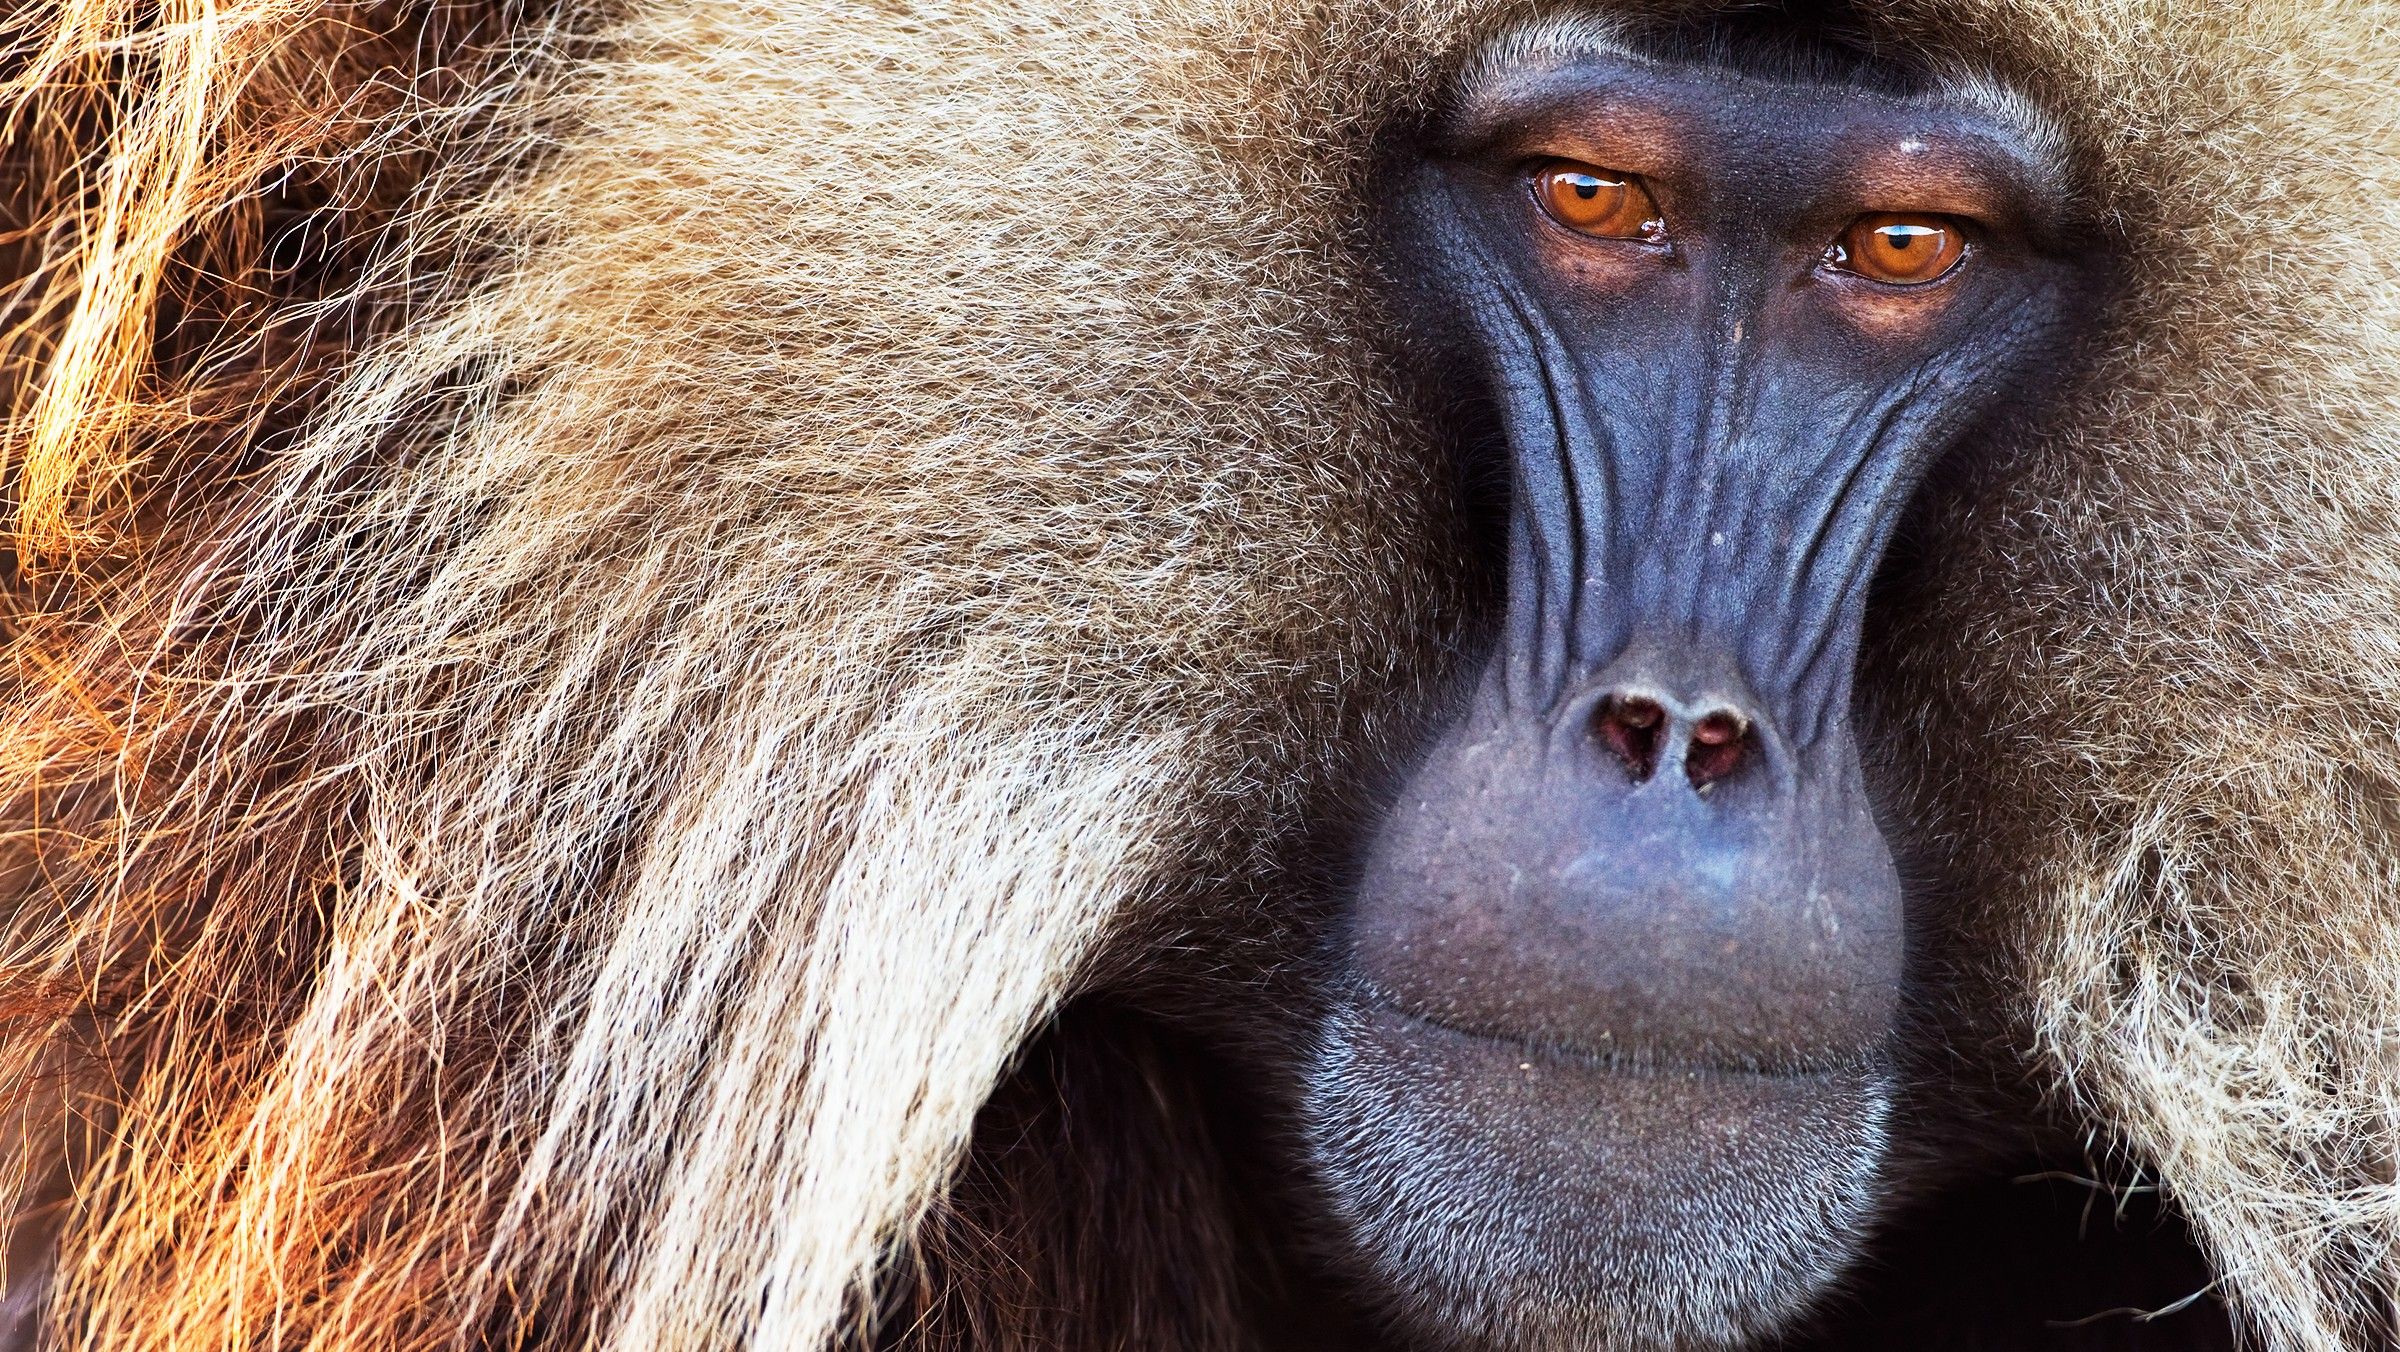 Фото и название всех видов обезьян